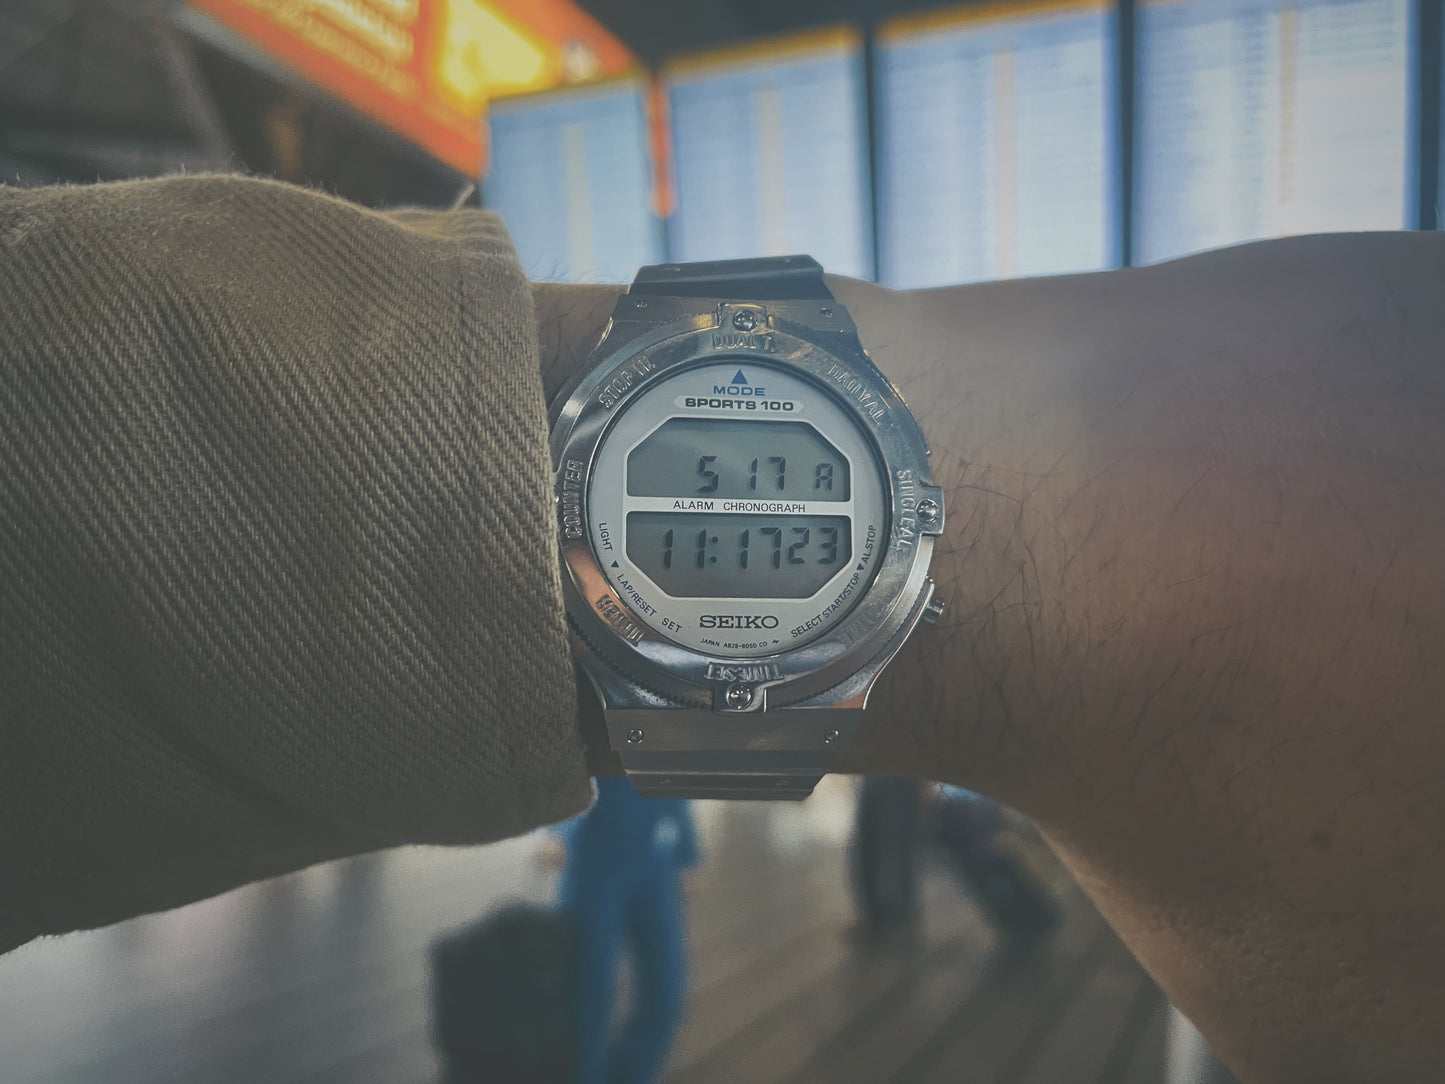 (1983) Seiko A829-6050 "Astronaut" Sports 100 Alarm Chronograph on wrist